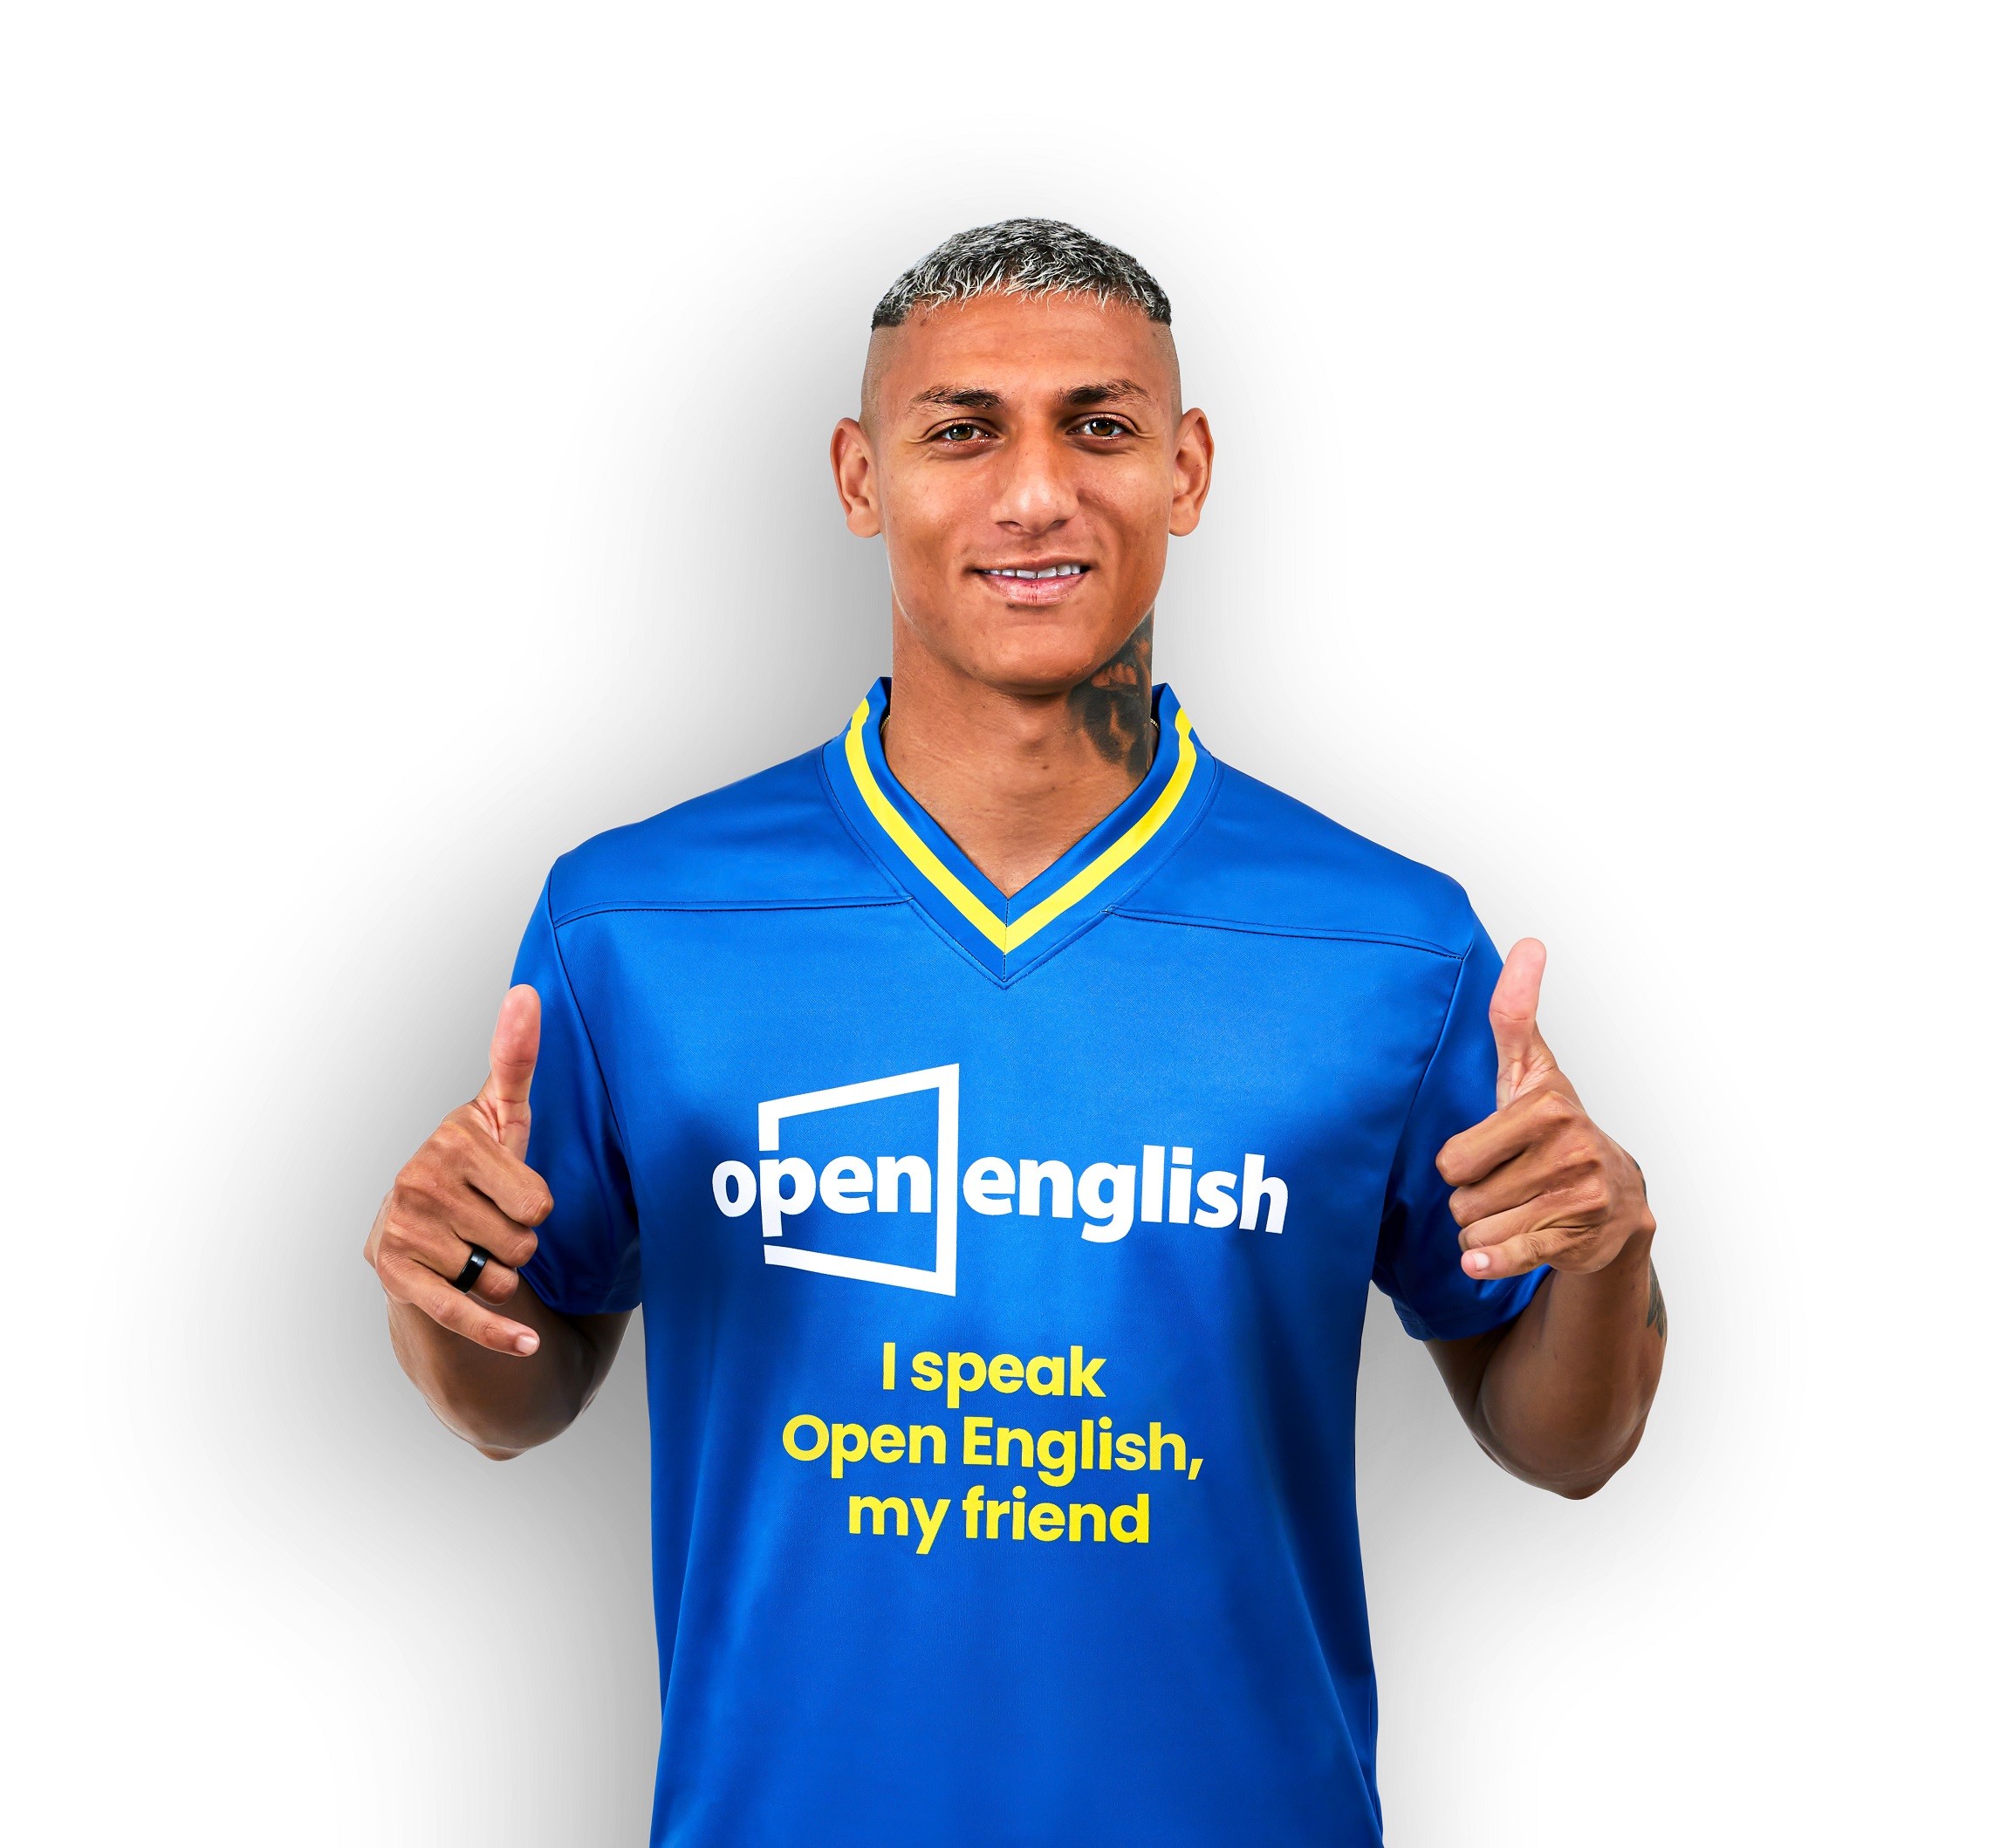 Open English lança campanha com jogador Richarlison – Revista Live Marketing